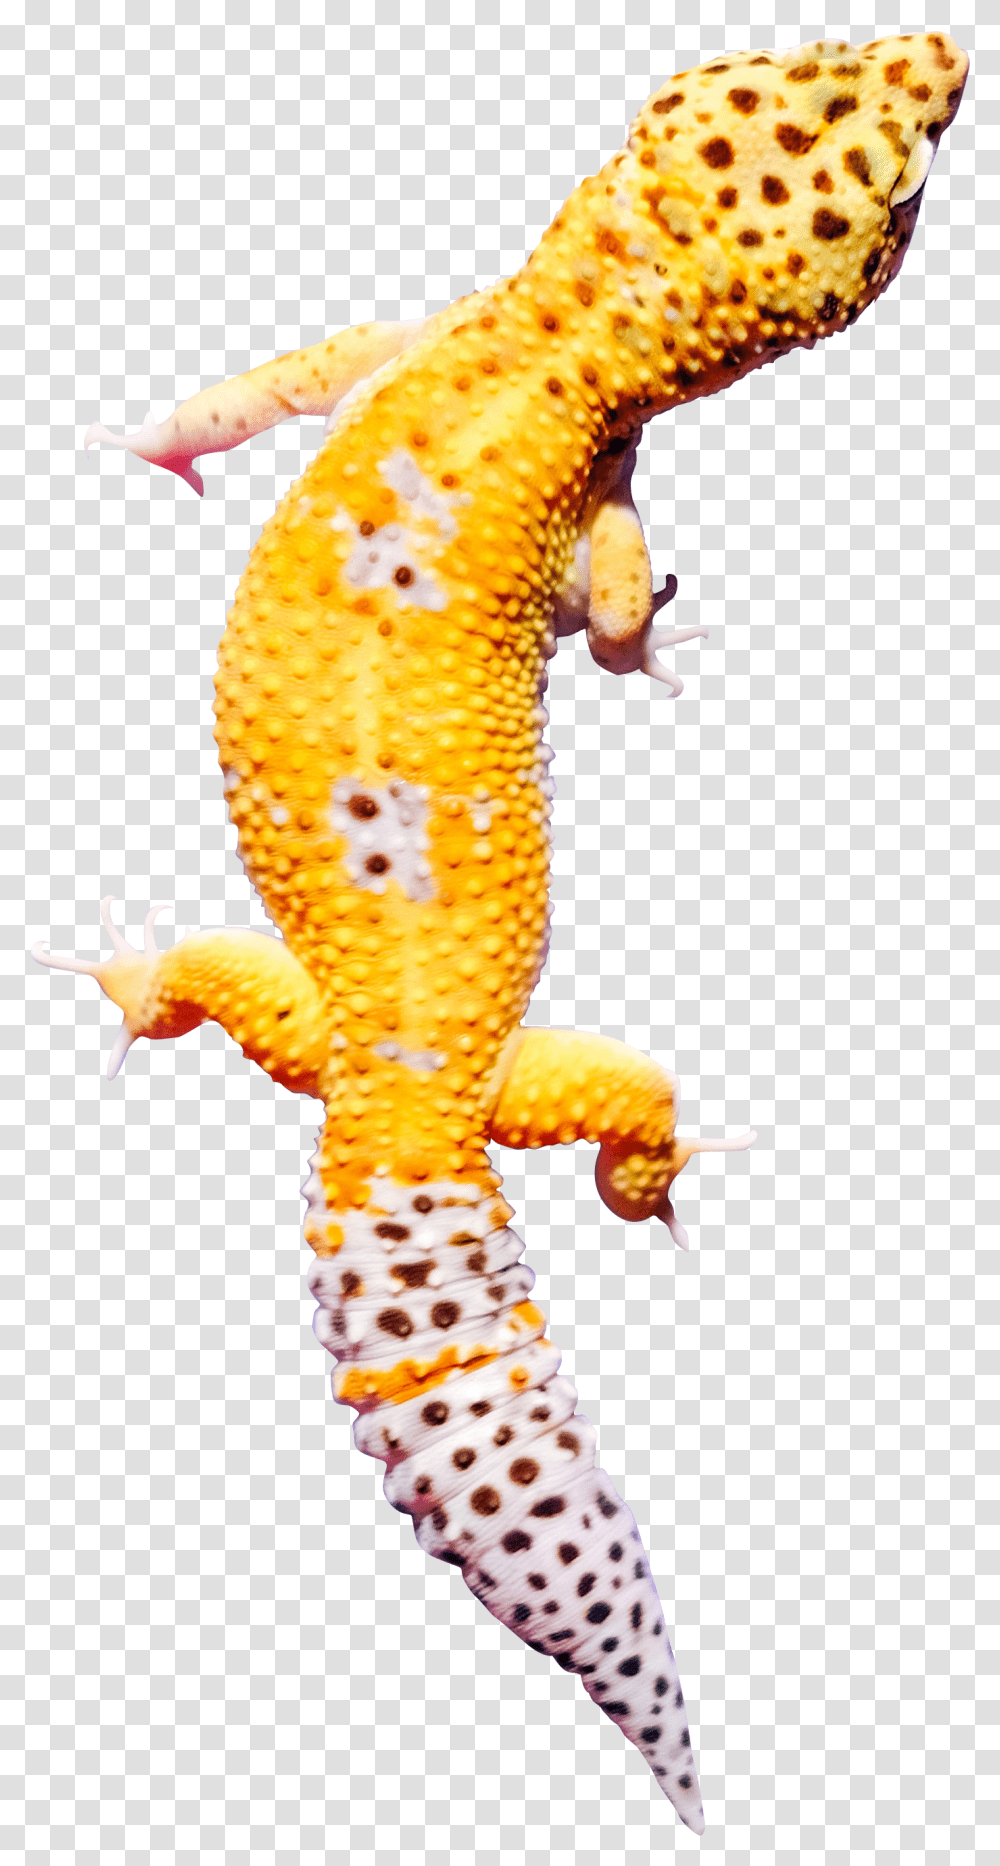 Yellow Gecko Malayalam, Lizard, Reptile, Animal, Sea Life Transparent Png